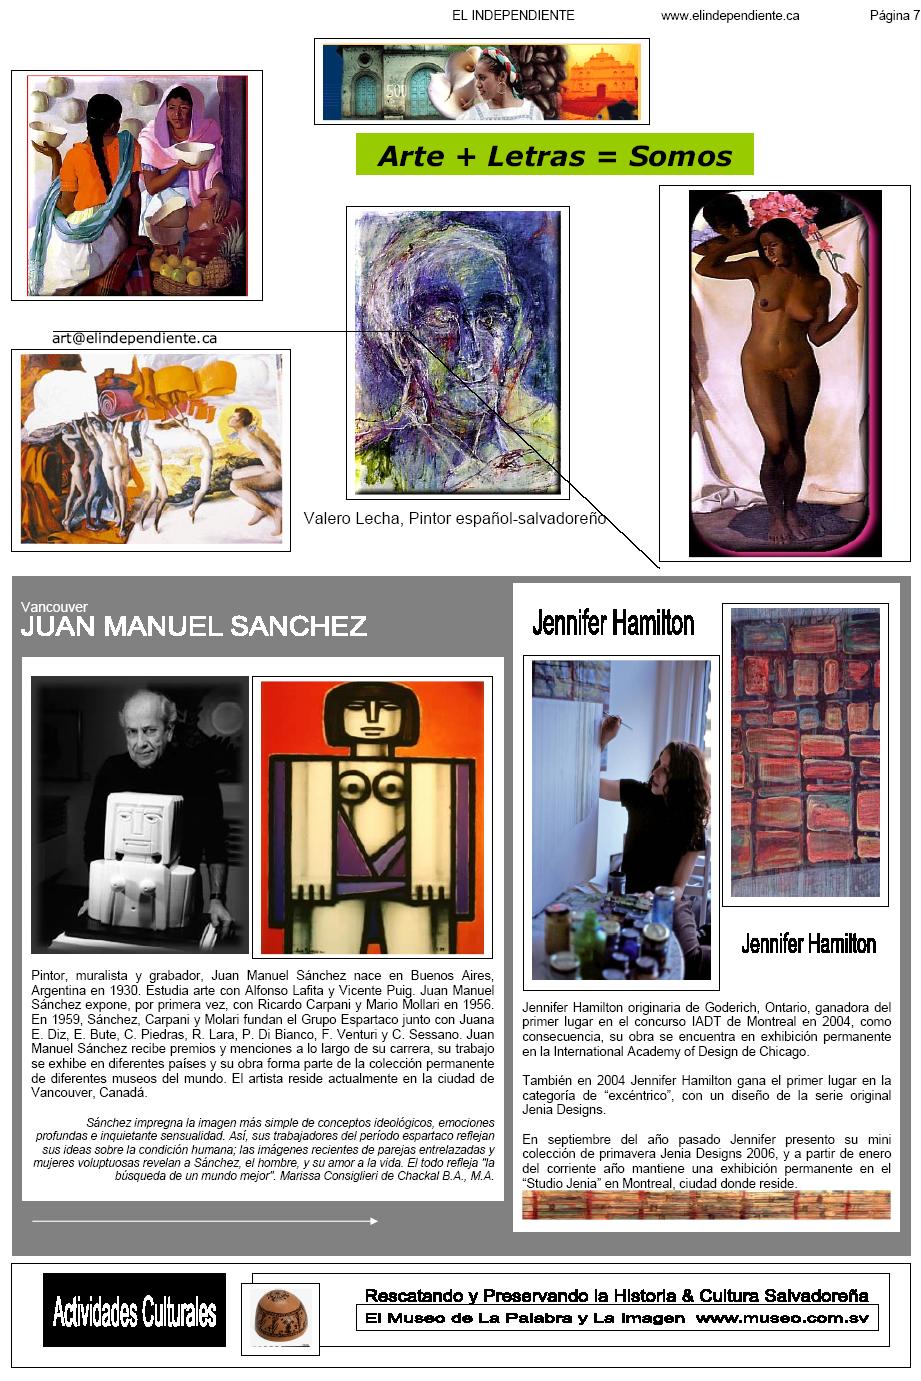 Cocodrilo Viudo Arte & Literatura suplemento El Independiente Canadian Newspaper